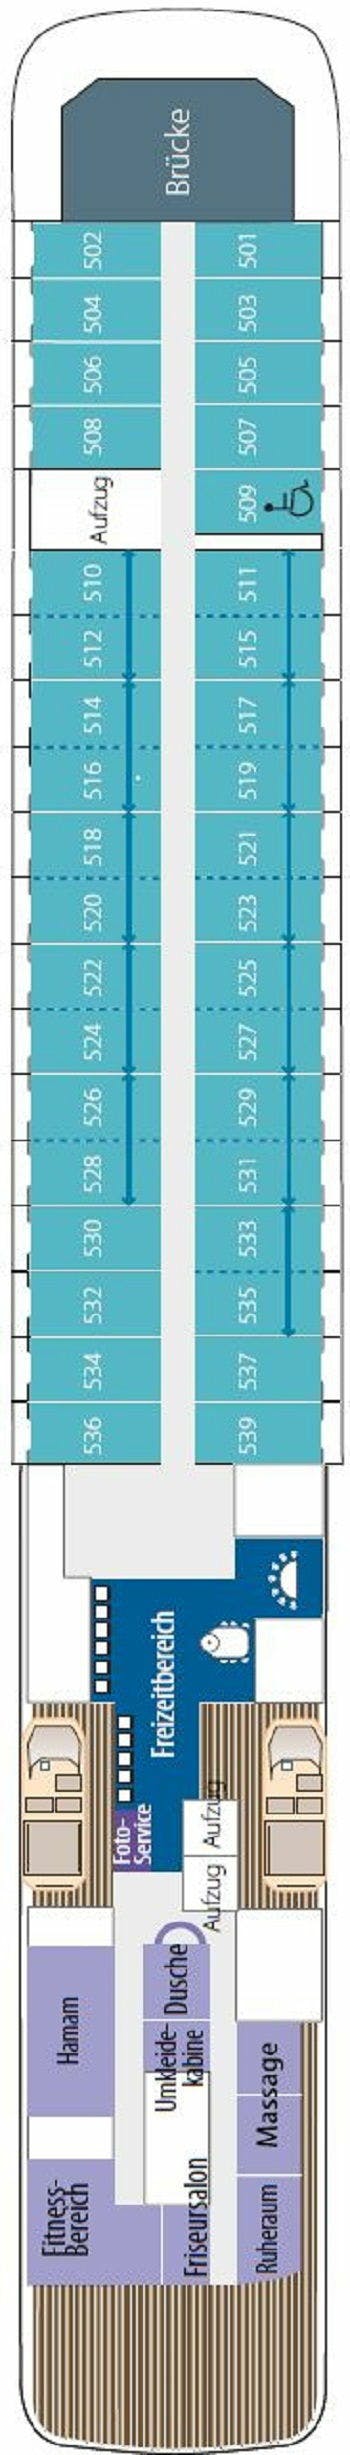 L AUSTRAL - Ponant - Deck 5 (Bengale)